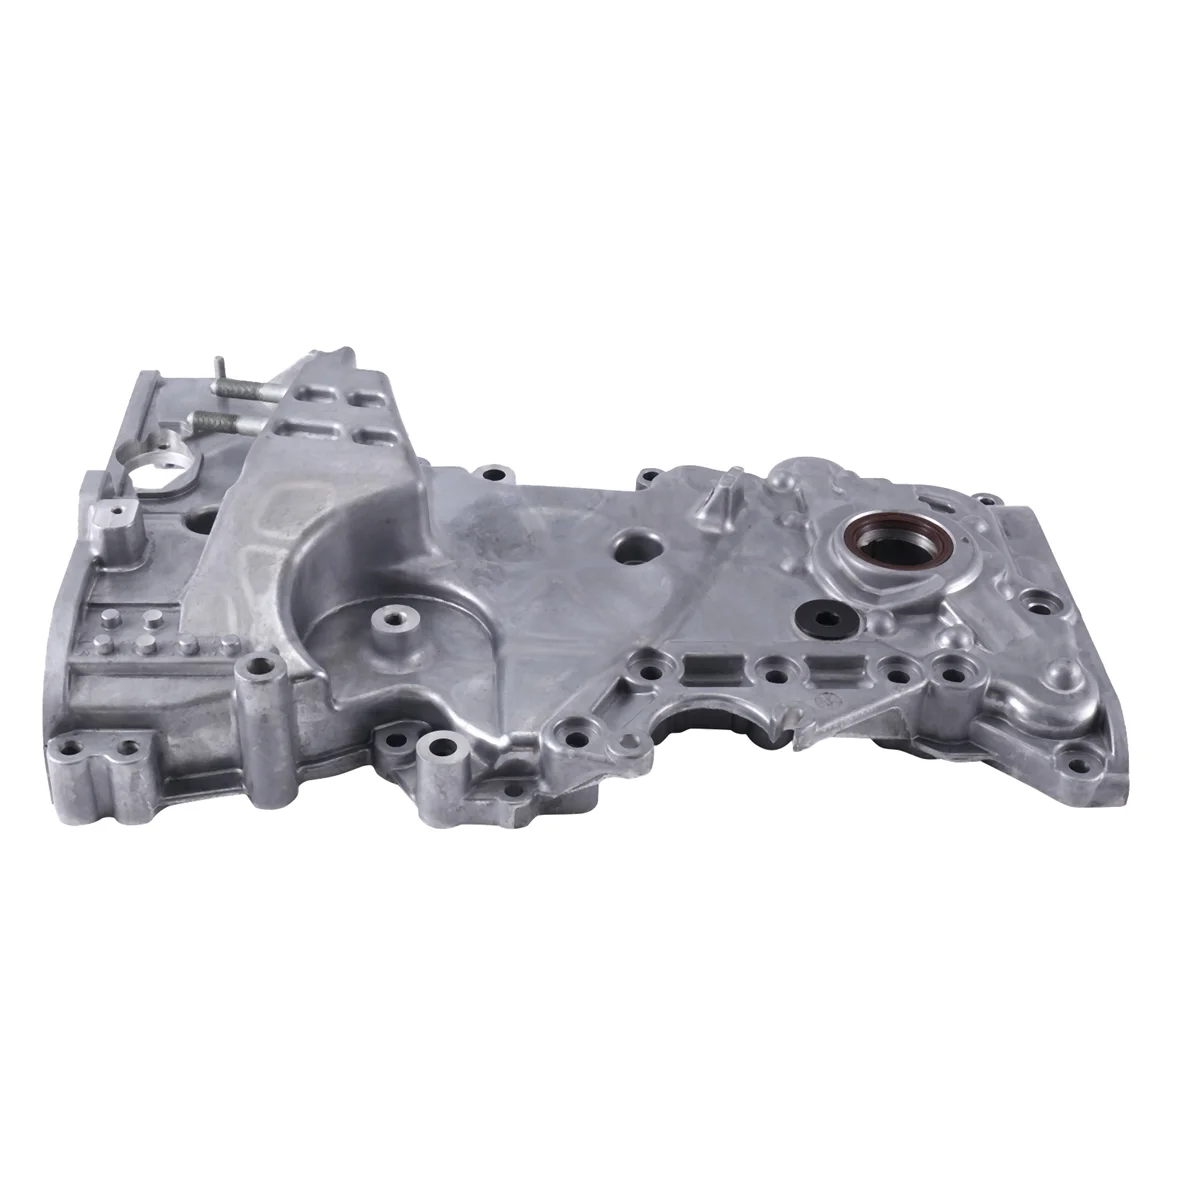 

Engine Timing Gear Cover for Hyundai Elantra2.0L 21350-2E740 21350-2E700